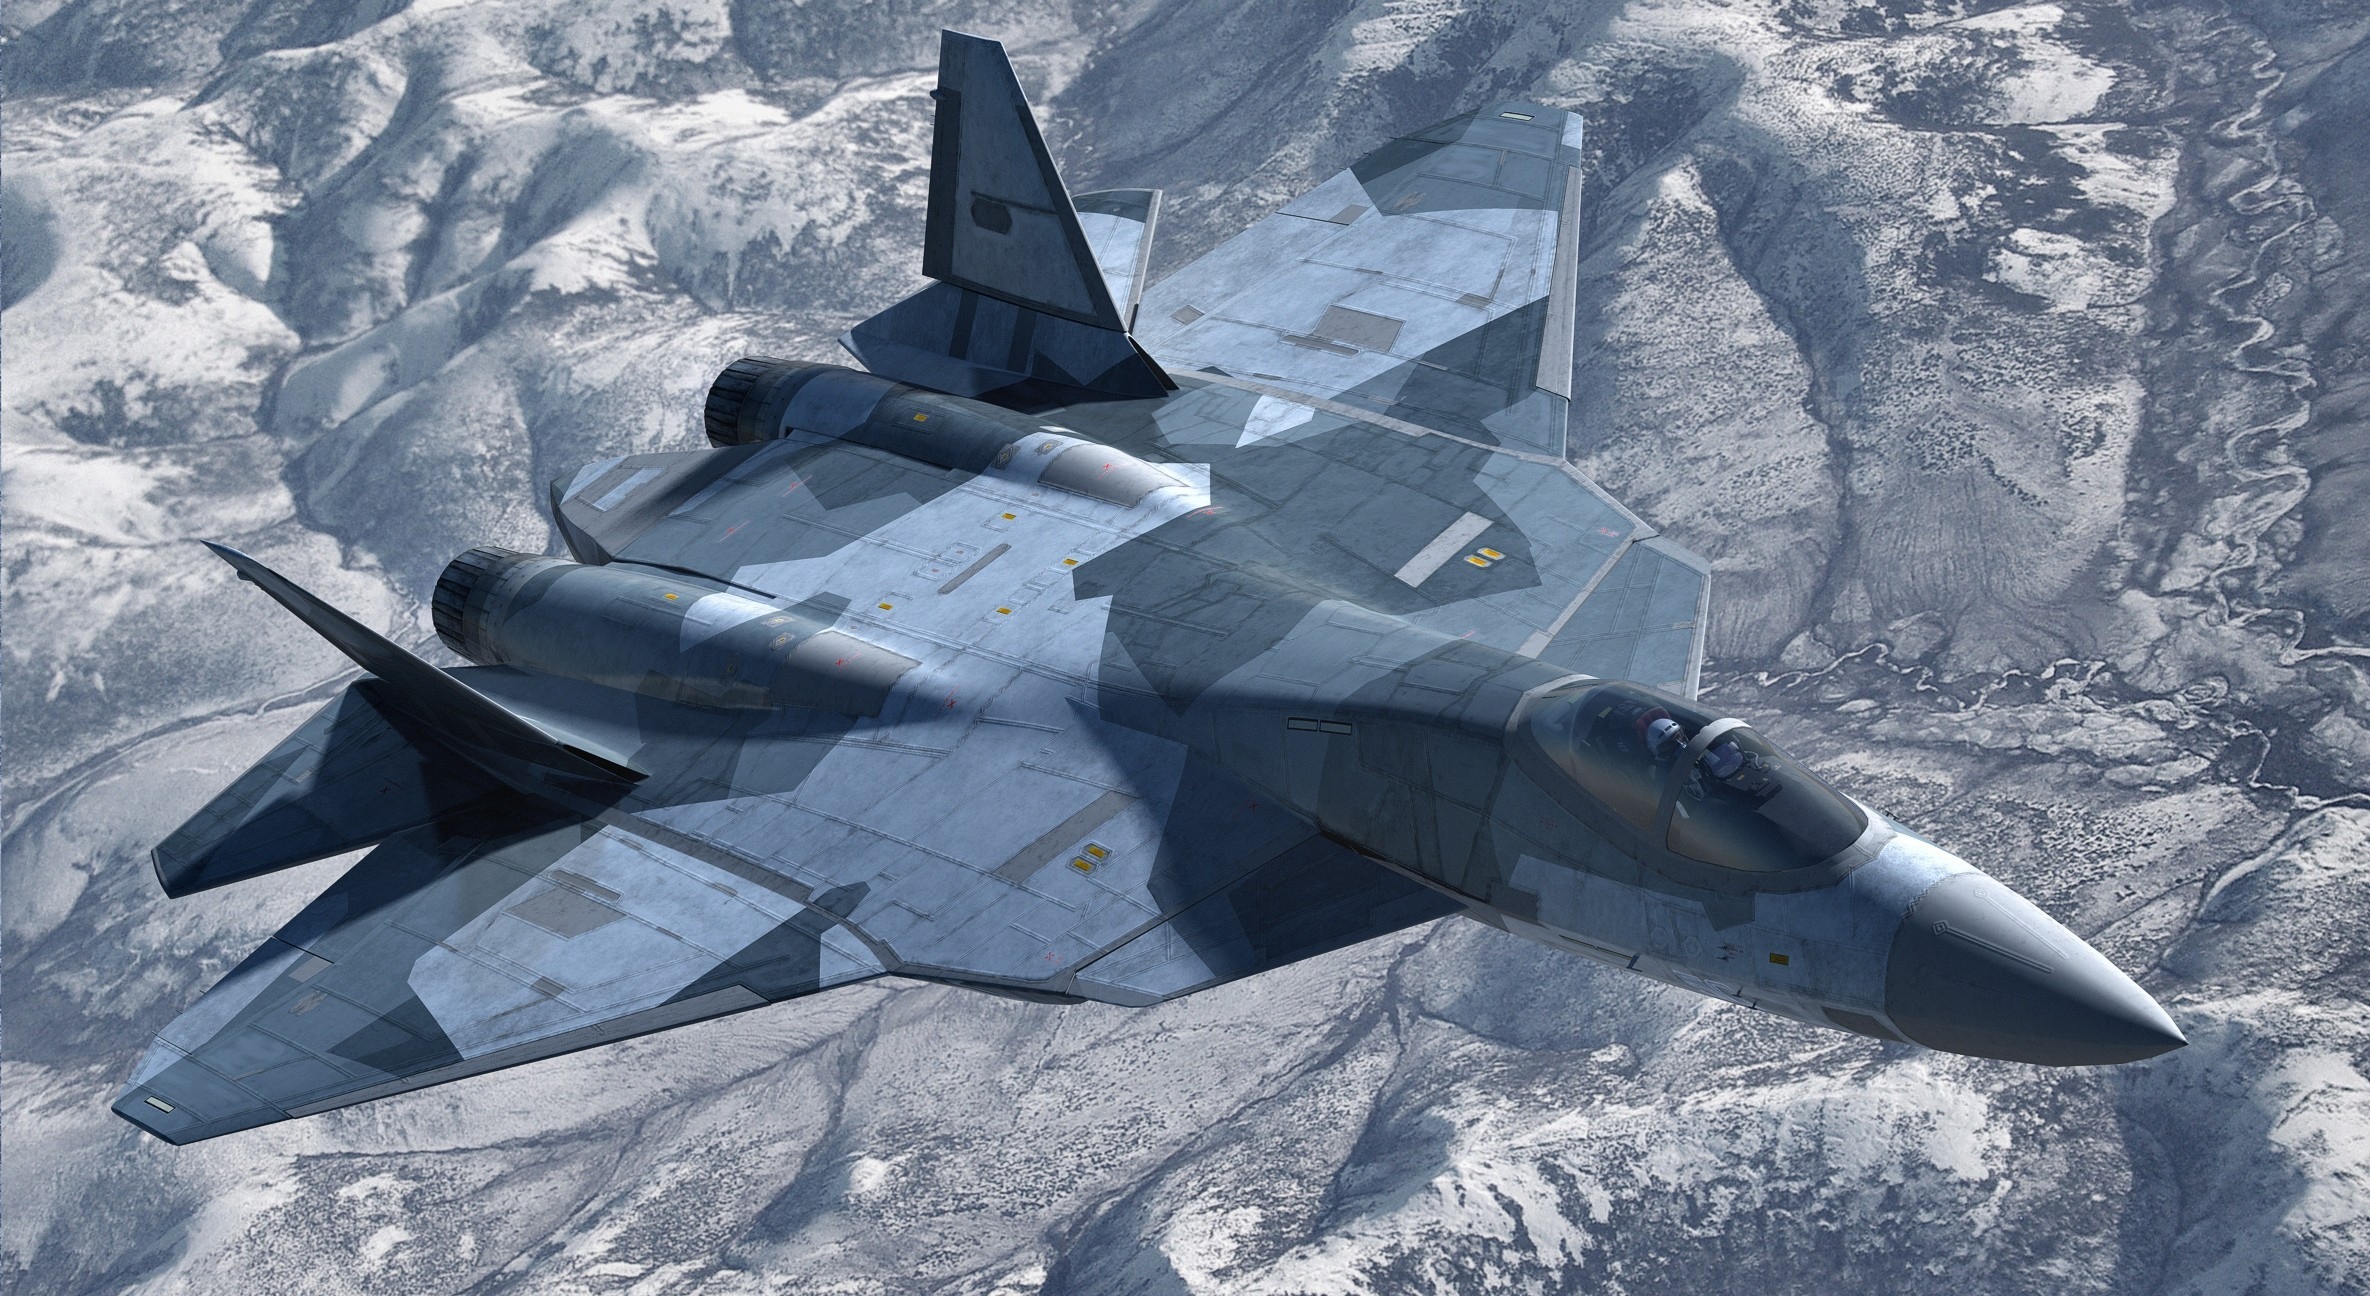 Режим сверхманёвренности: какие задачи может выполнять российский истребитель пятого поколения су-57